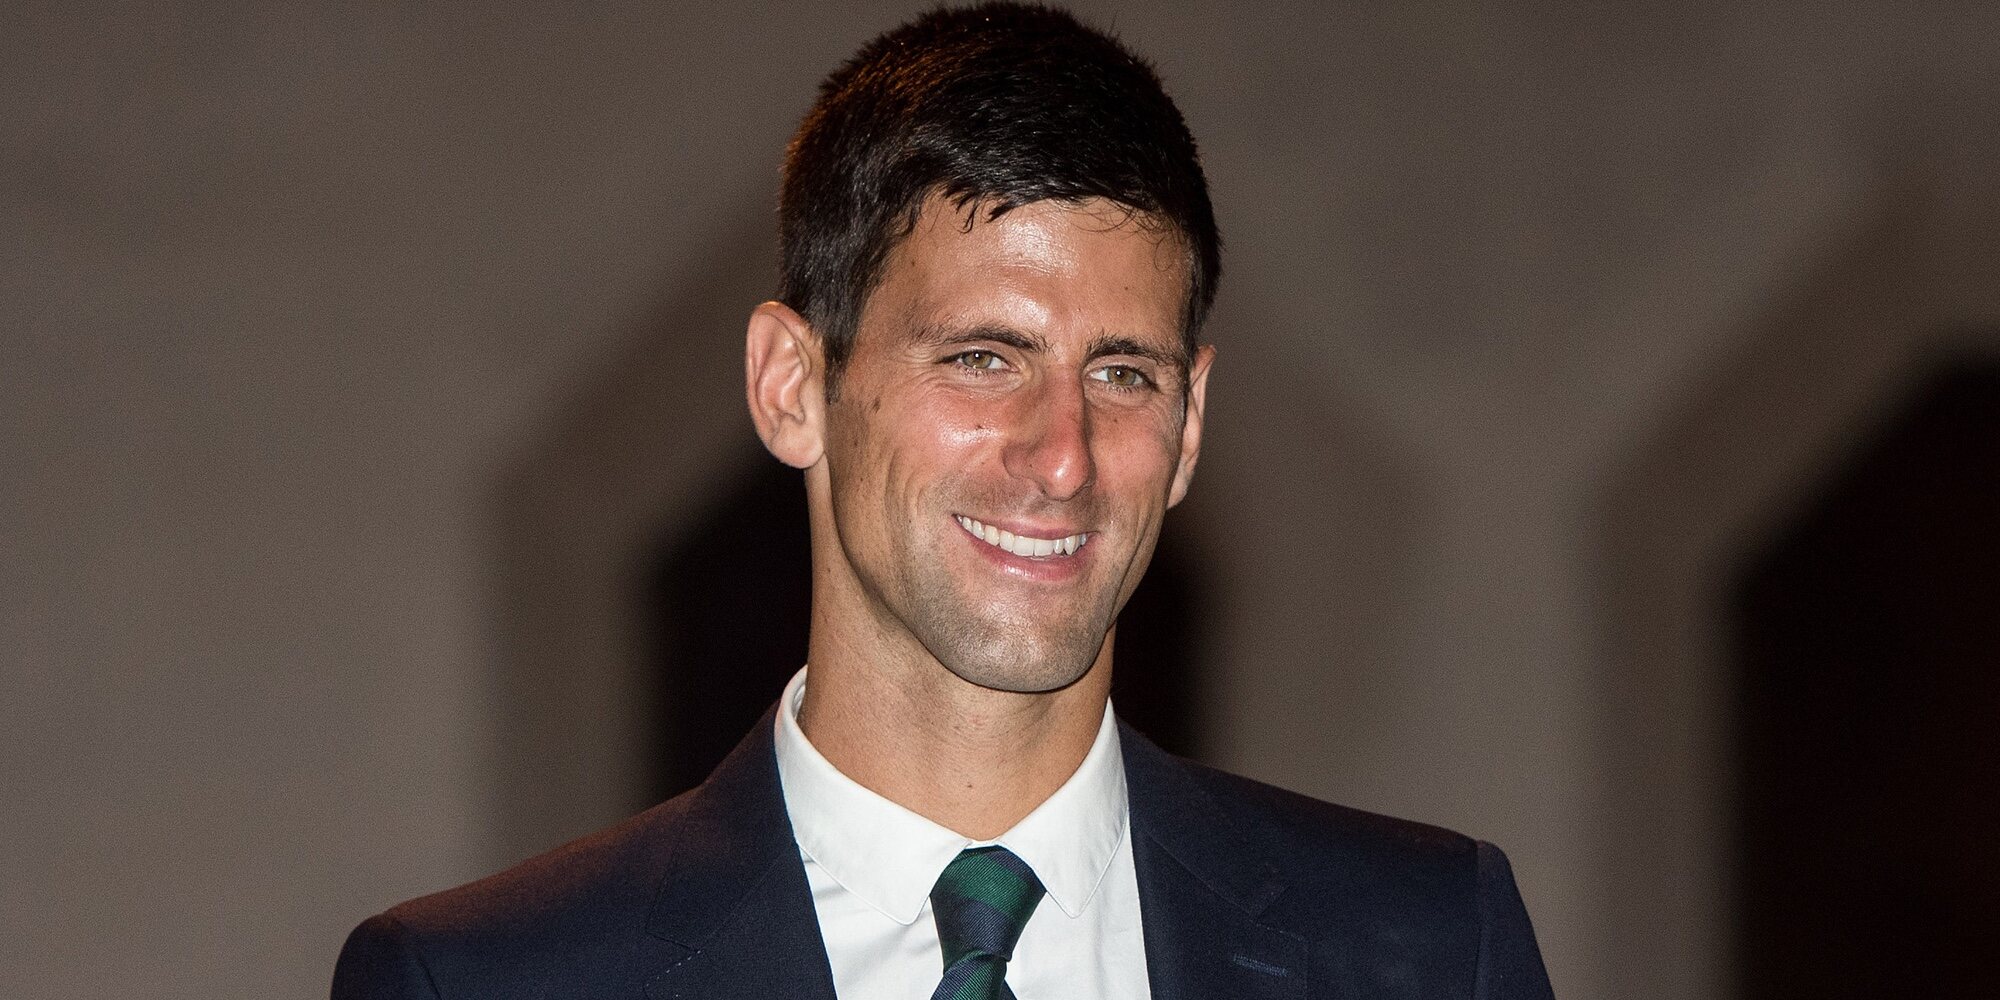 El Ministro de Inmigración australiano cancela el visado a Novak Djokovic por sus mentiras